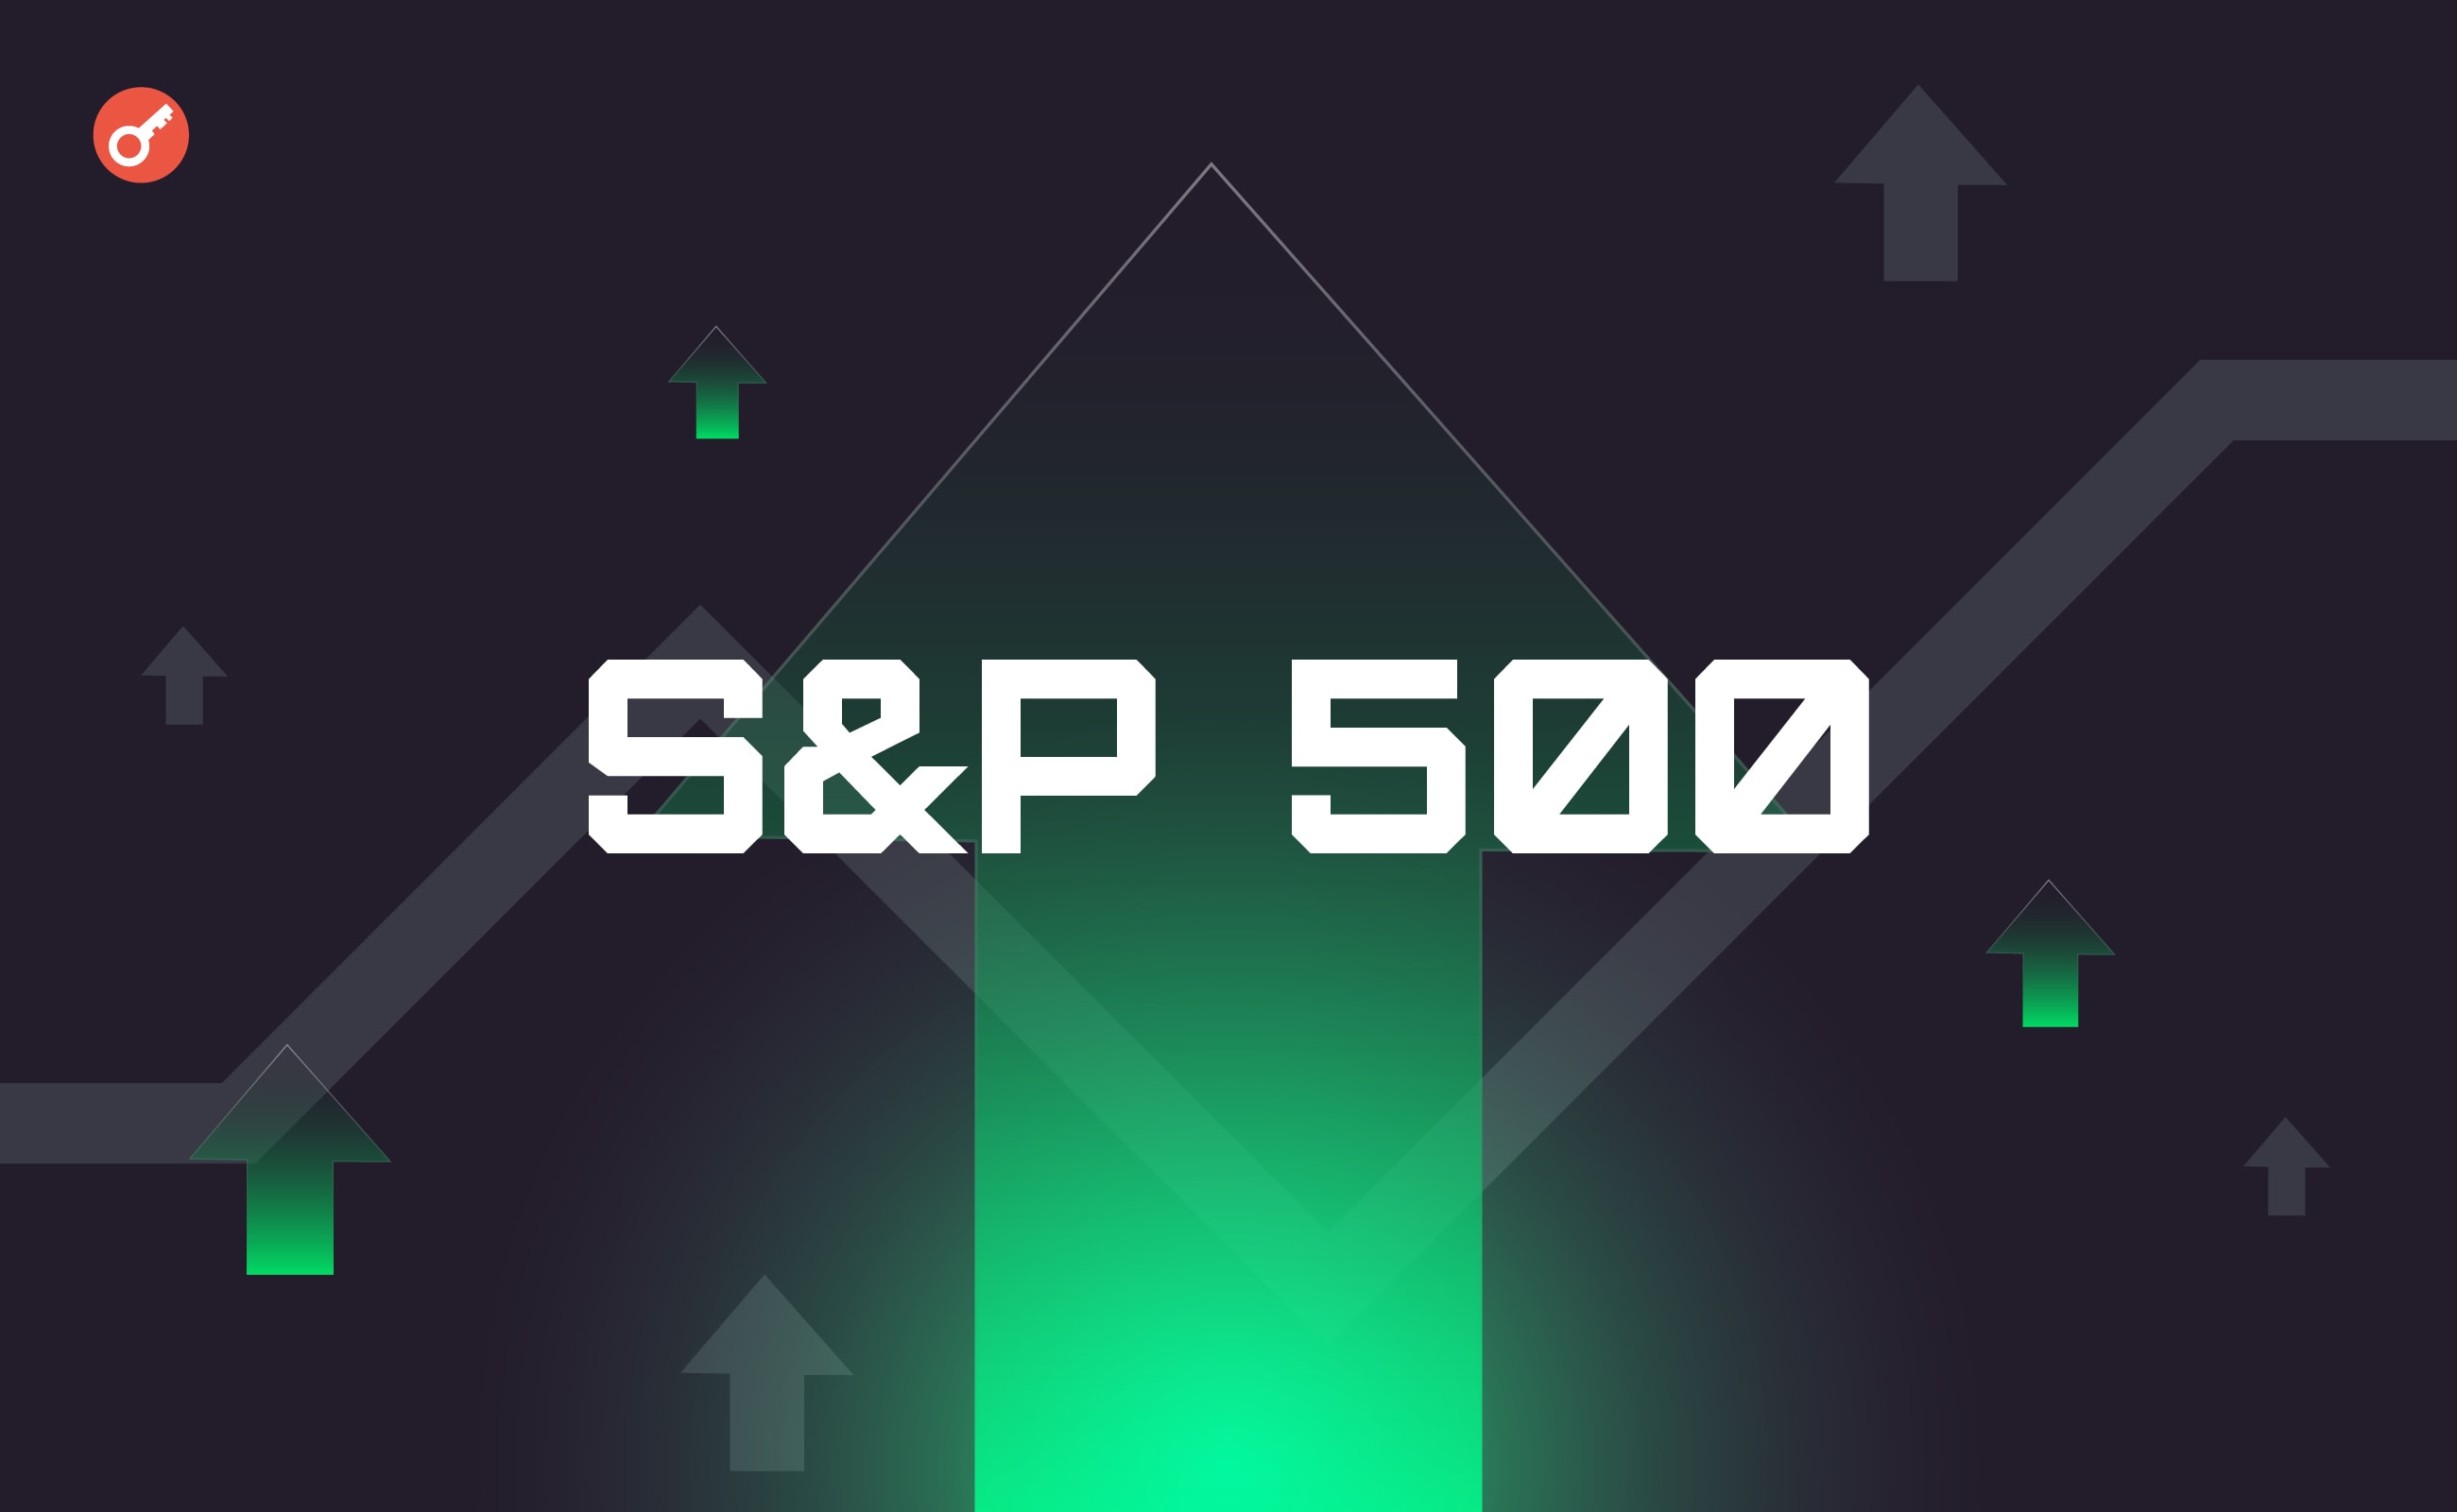 Індекс S&P 500 обійшов біткоїн та Ethereum. Головний колаж новини.